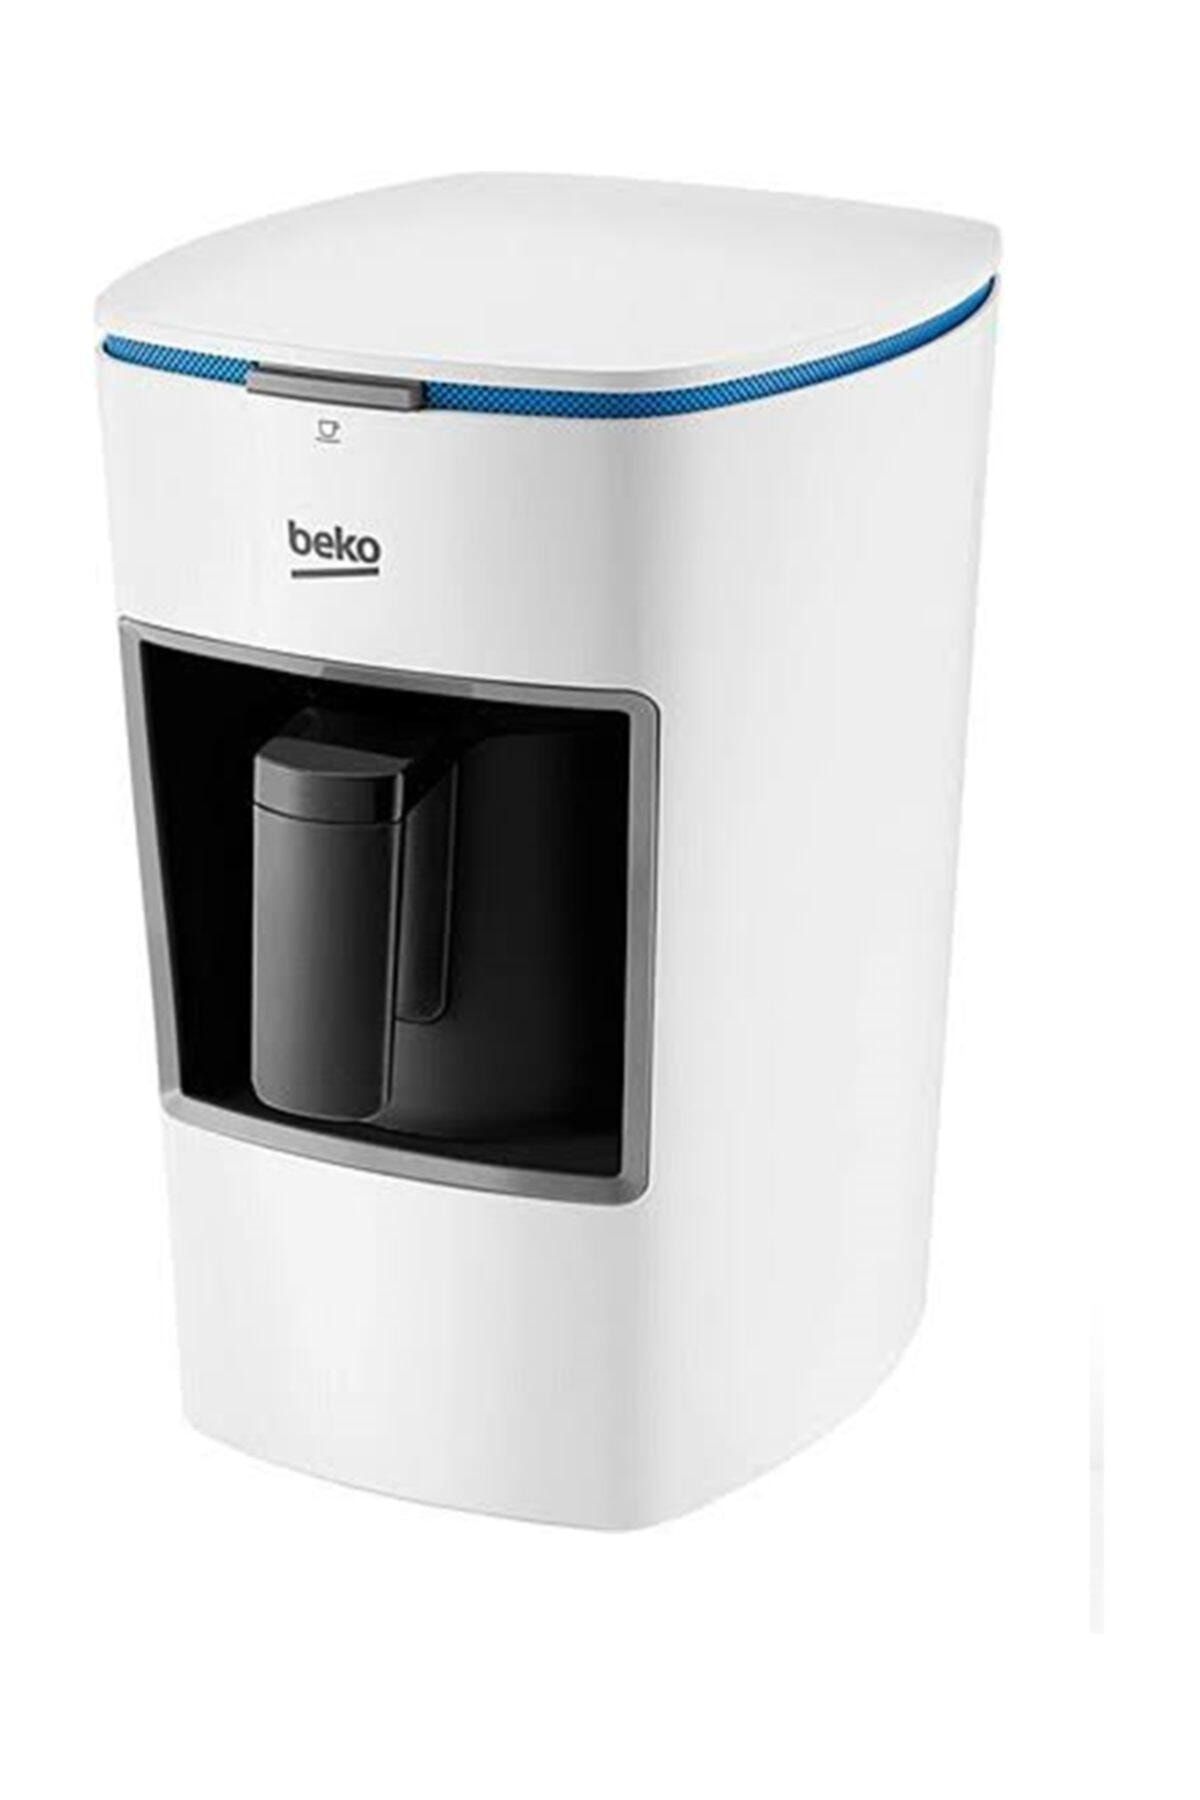 Beko Bkk 2300 Mini Tekli Beyaz Kahve Makinesi